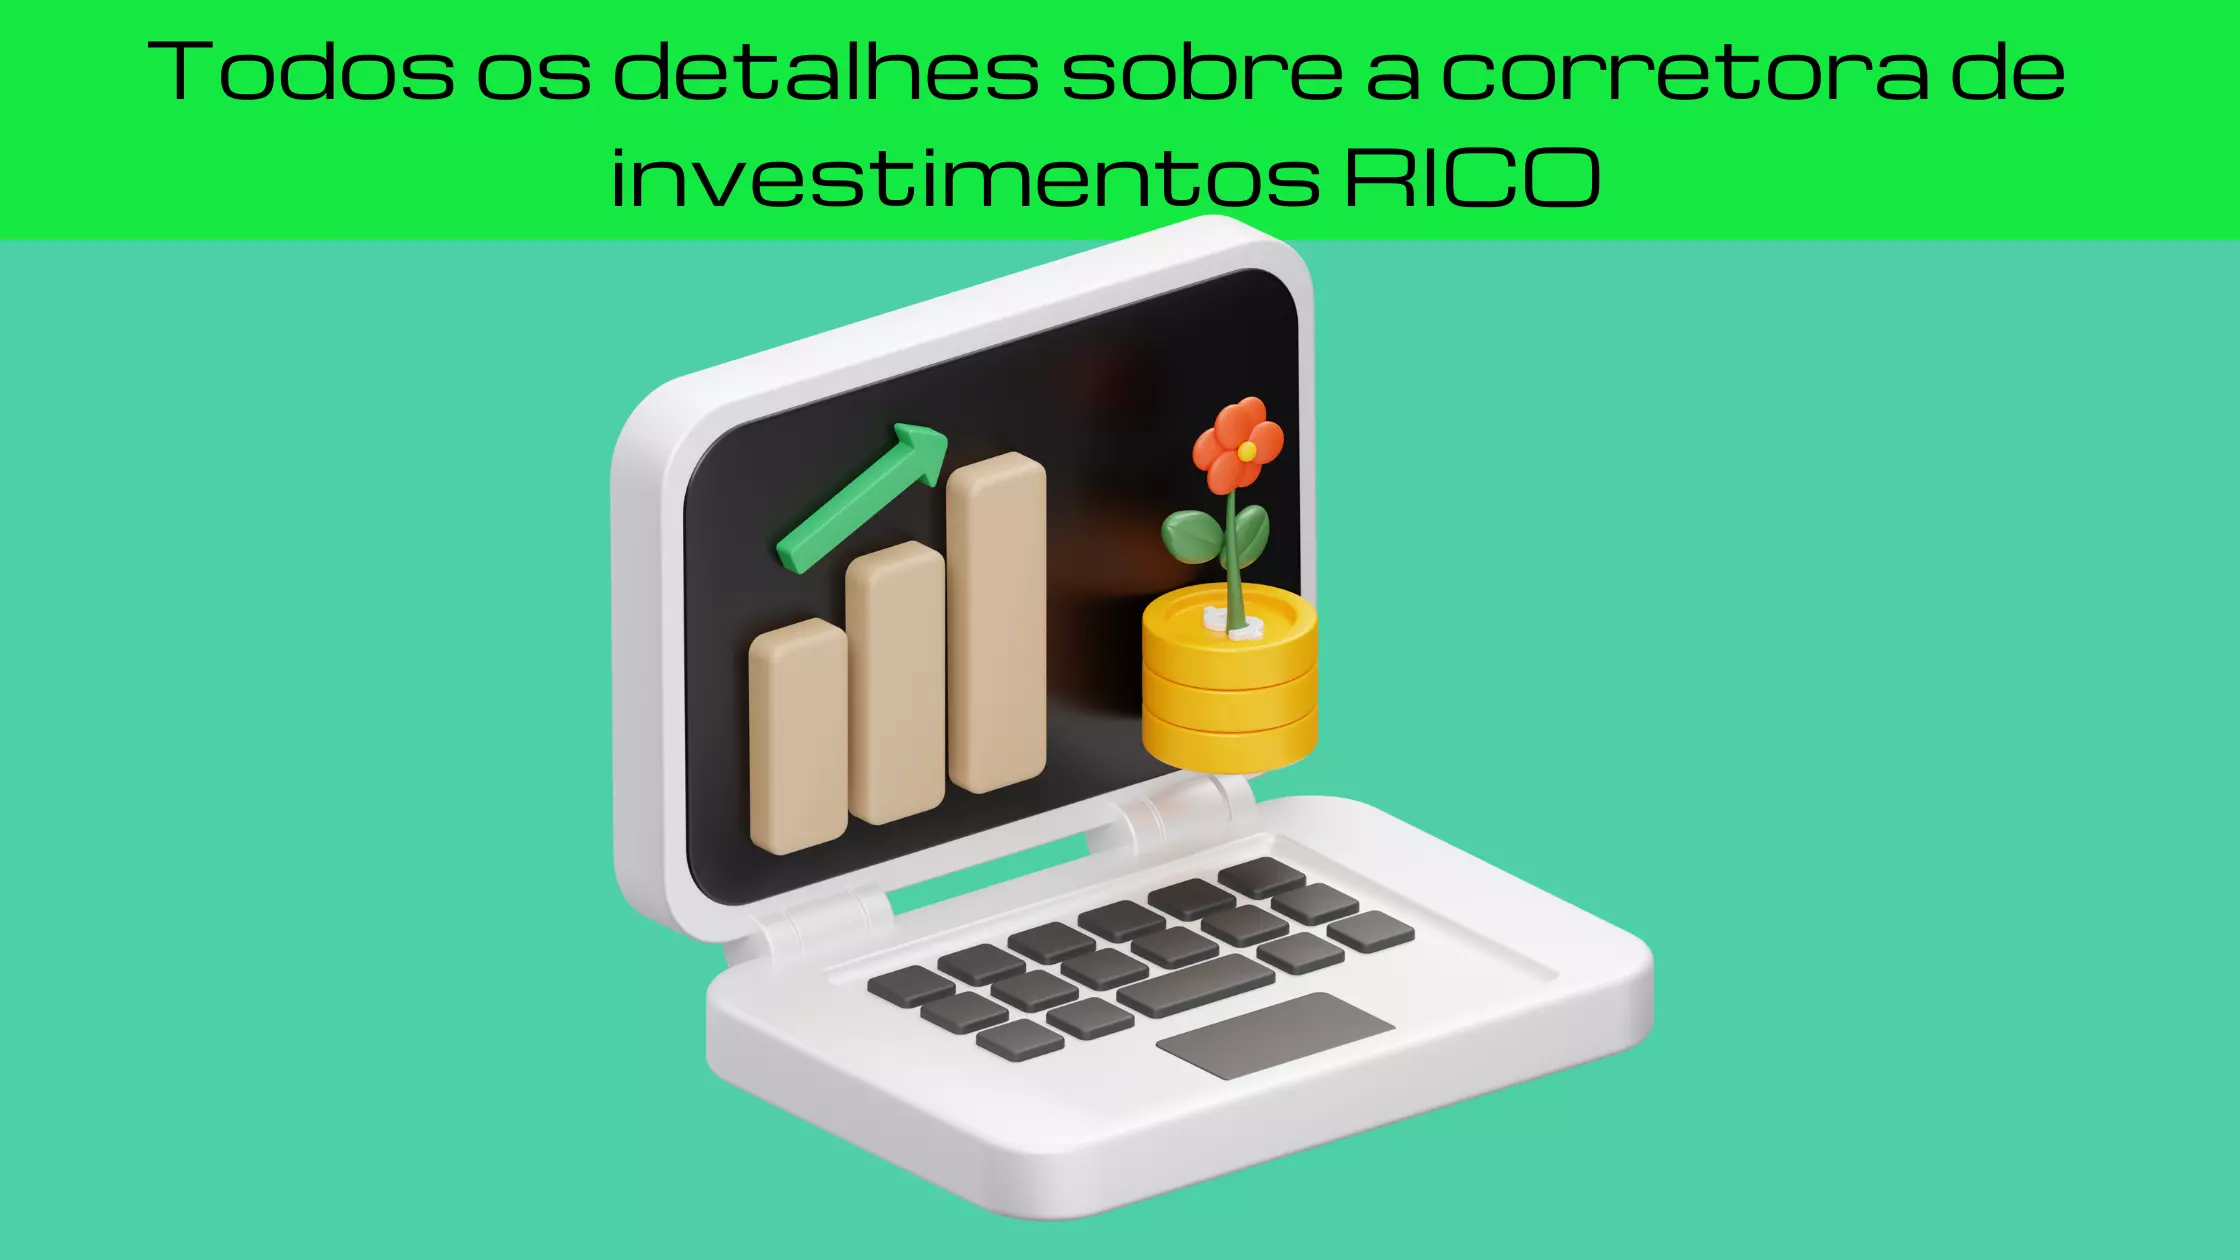 CORRETORA DE INVESTIMENTOS RICO